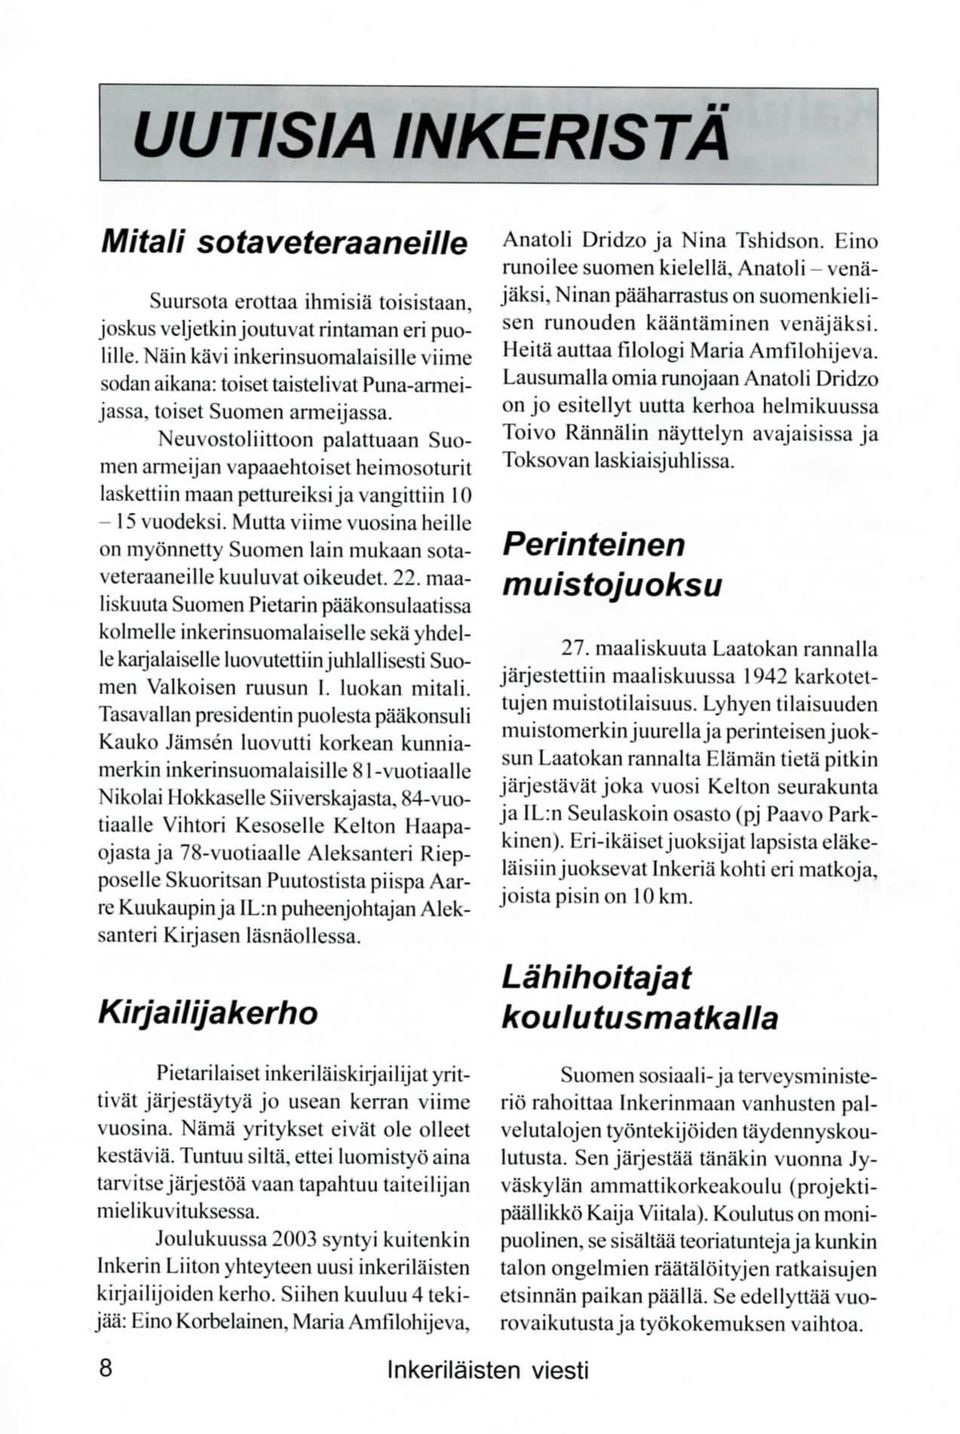 Ncuvostoliittoon palattuaan Suomen armeijan vapaaehtoiset heimosoturit laskcttiinmaanpettureiksija vangittiin 10-15 vuodeksi.